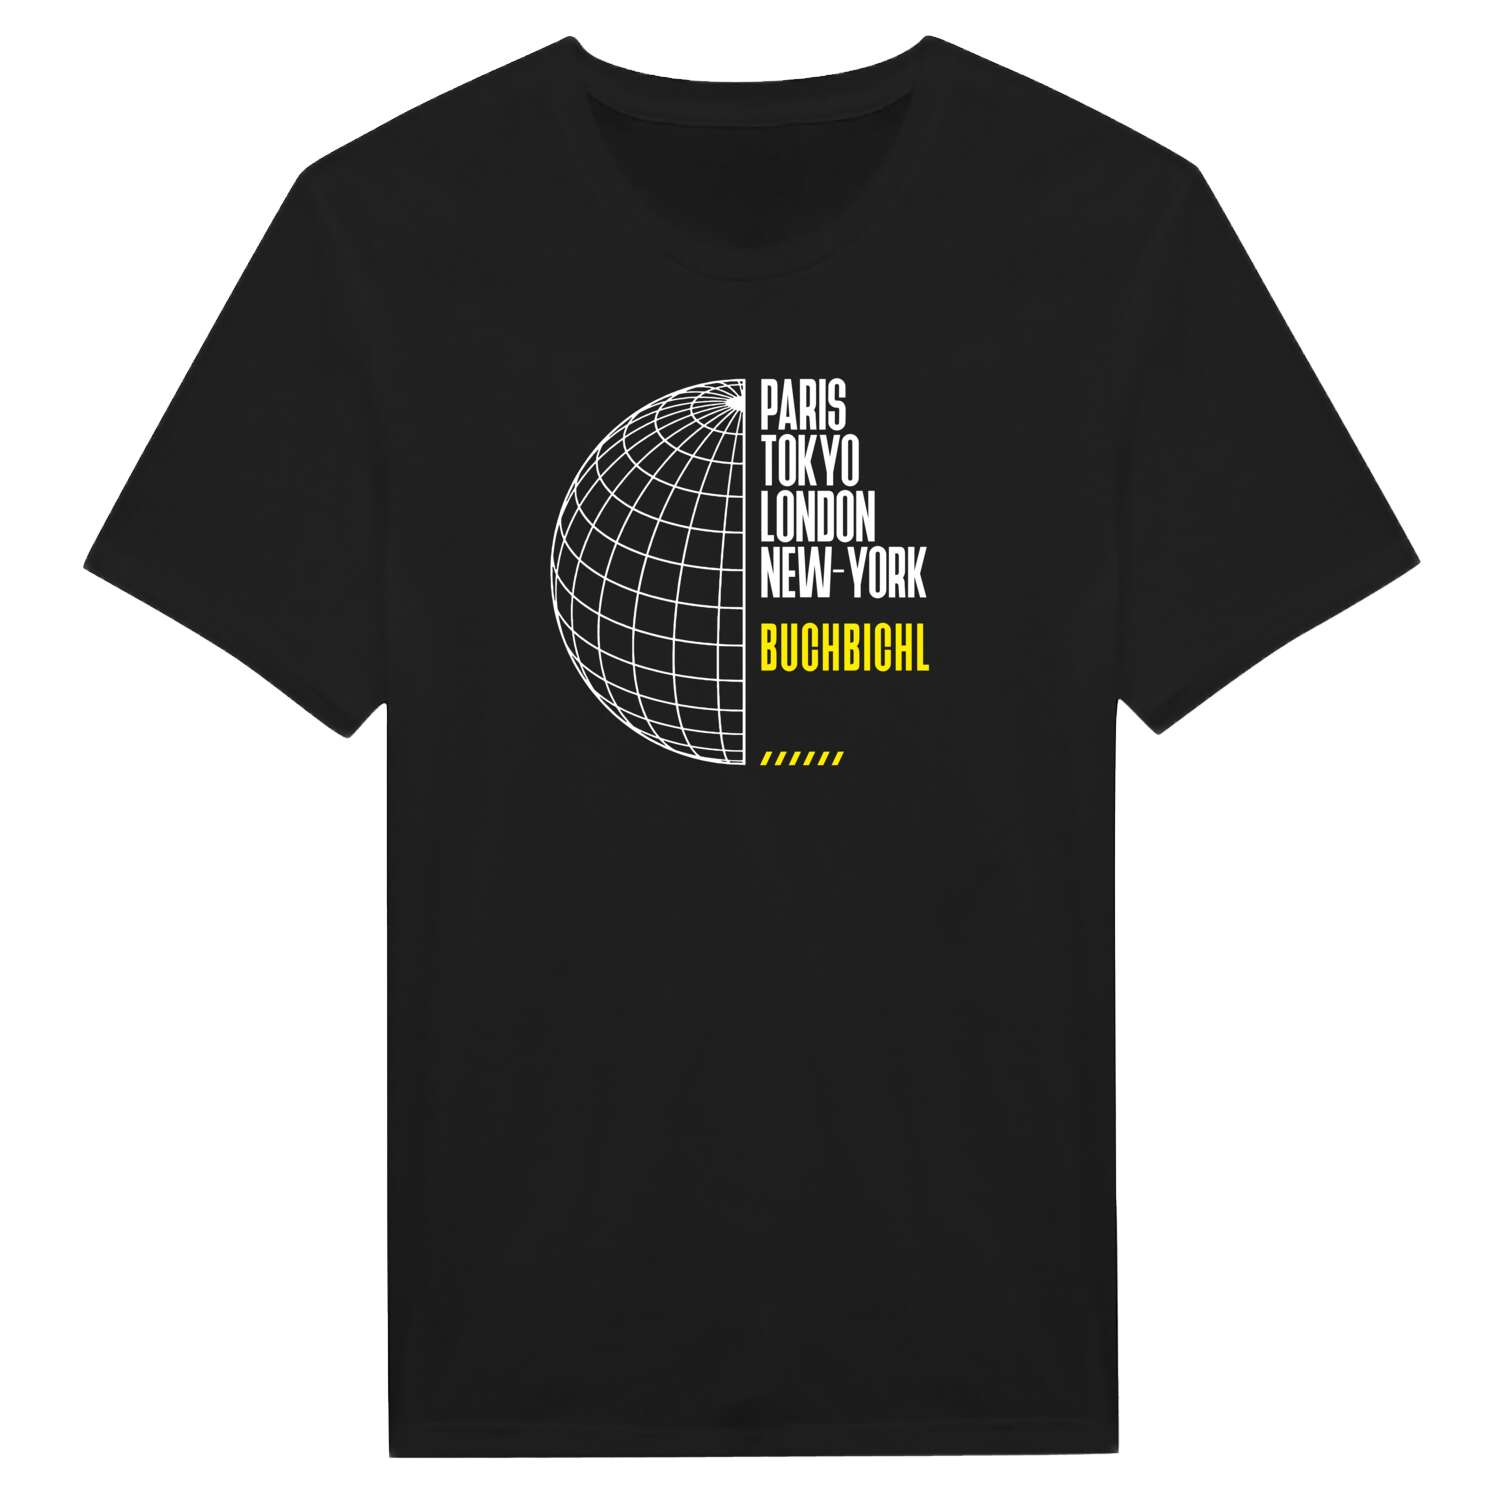 Buchbichl T-Shirt »Paris Tokyo London«